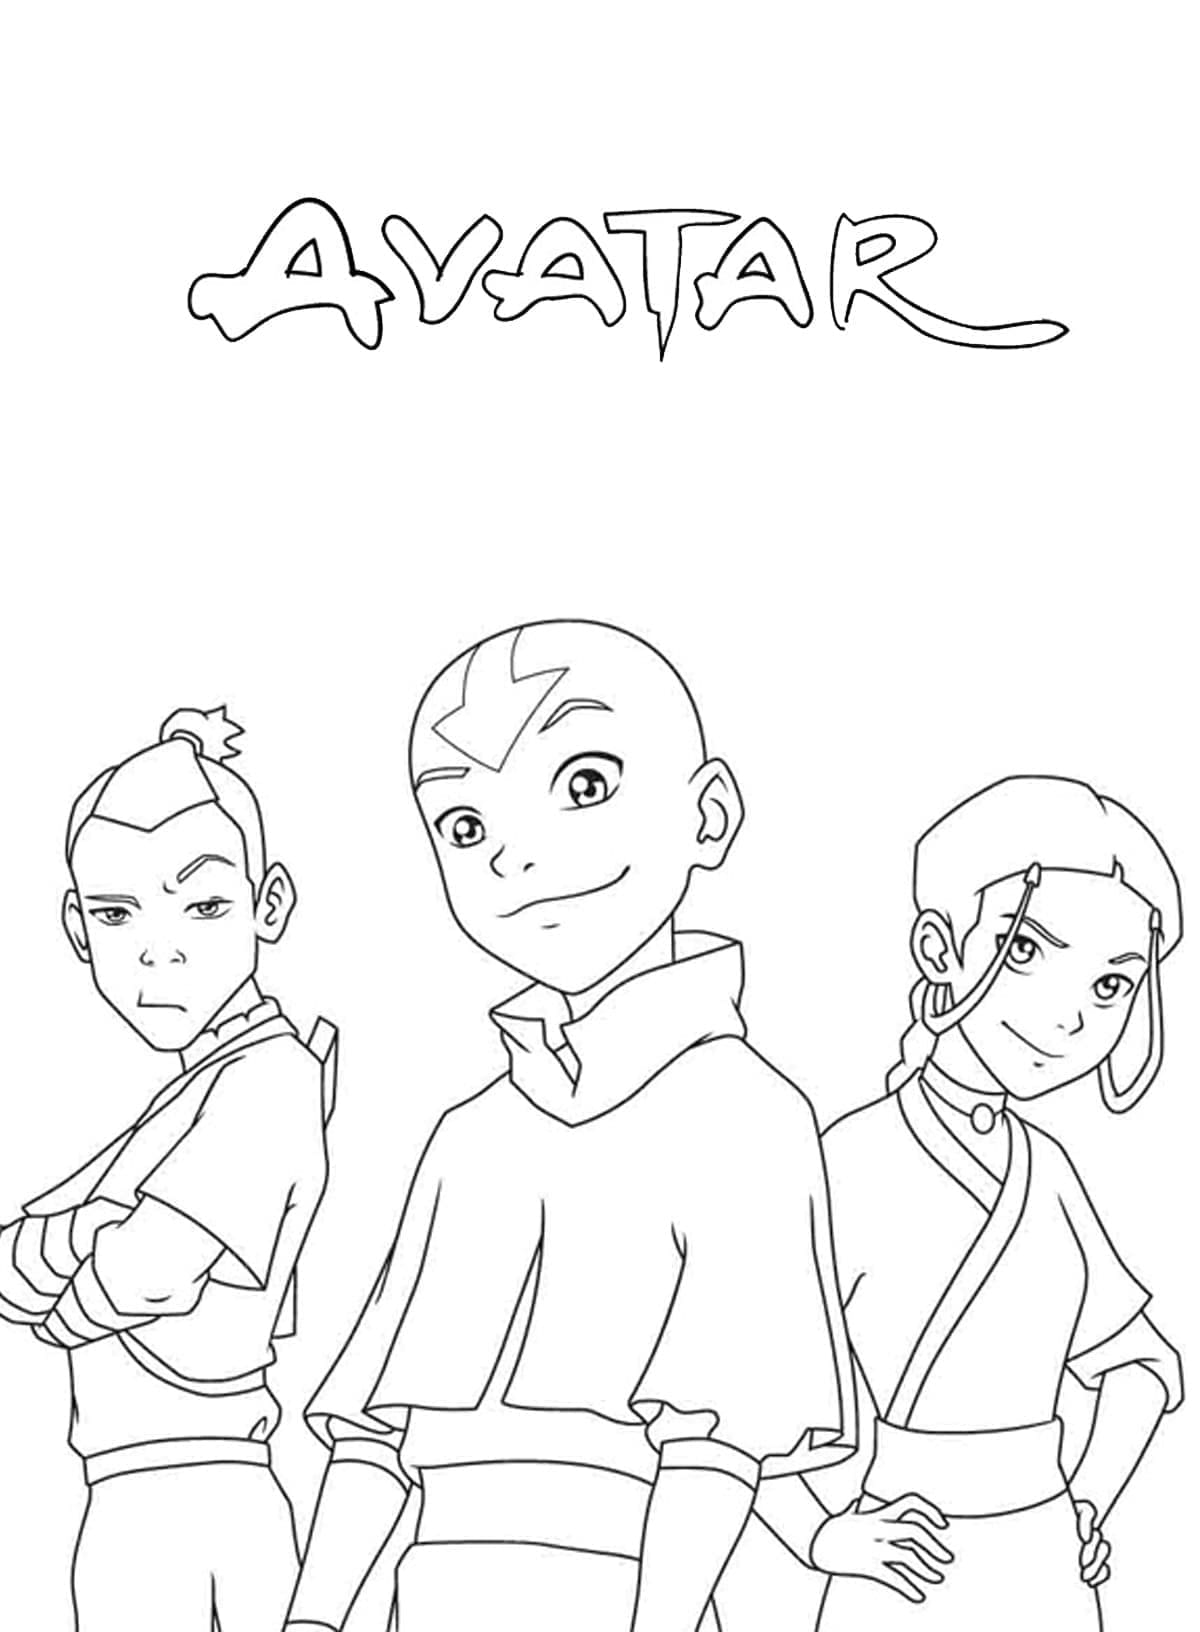 Målarbild Sokka, Aang och Katara